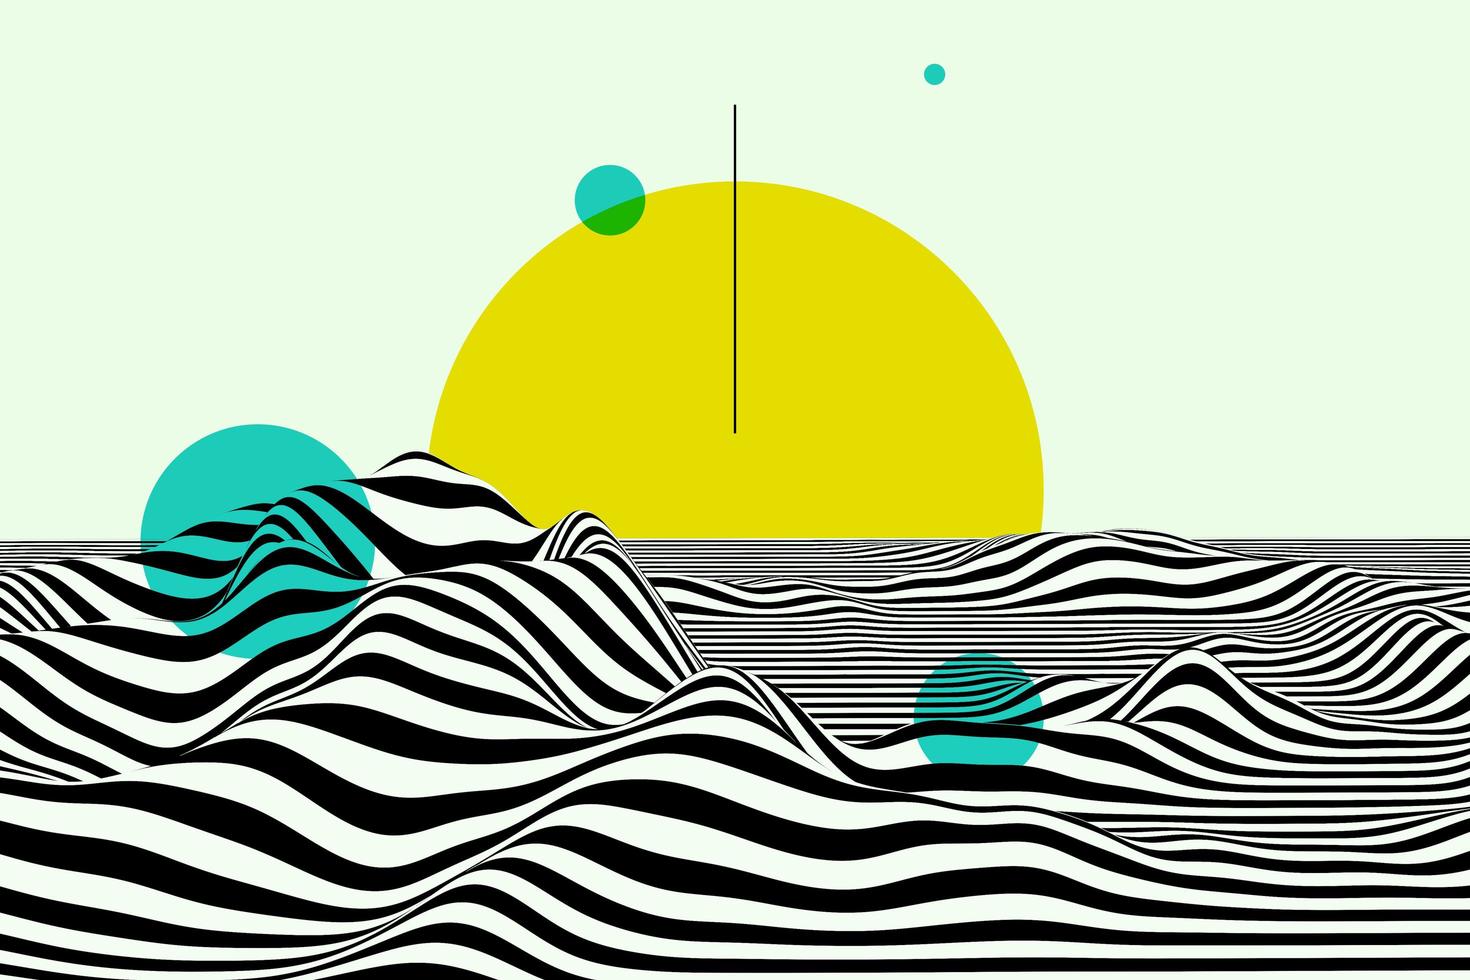 ilustração 3d abstrata do sol. amplo horizonte do mar com ondas listradas. superfície ondulada monocromática. design de plano de fundo de linhas curvas preto e branco foto